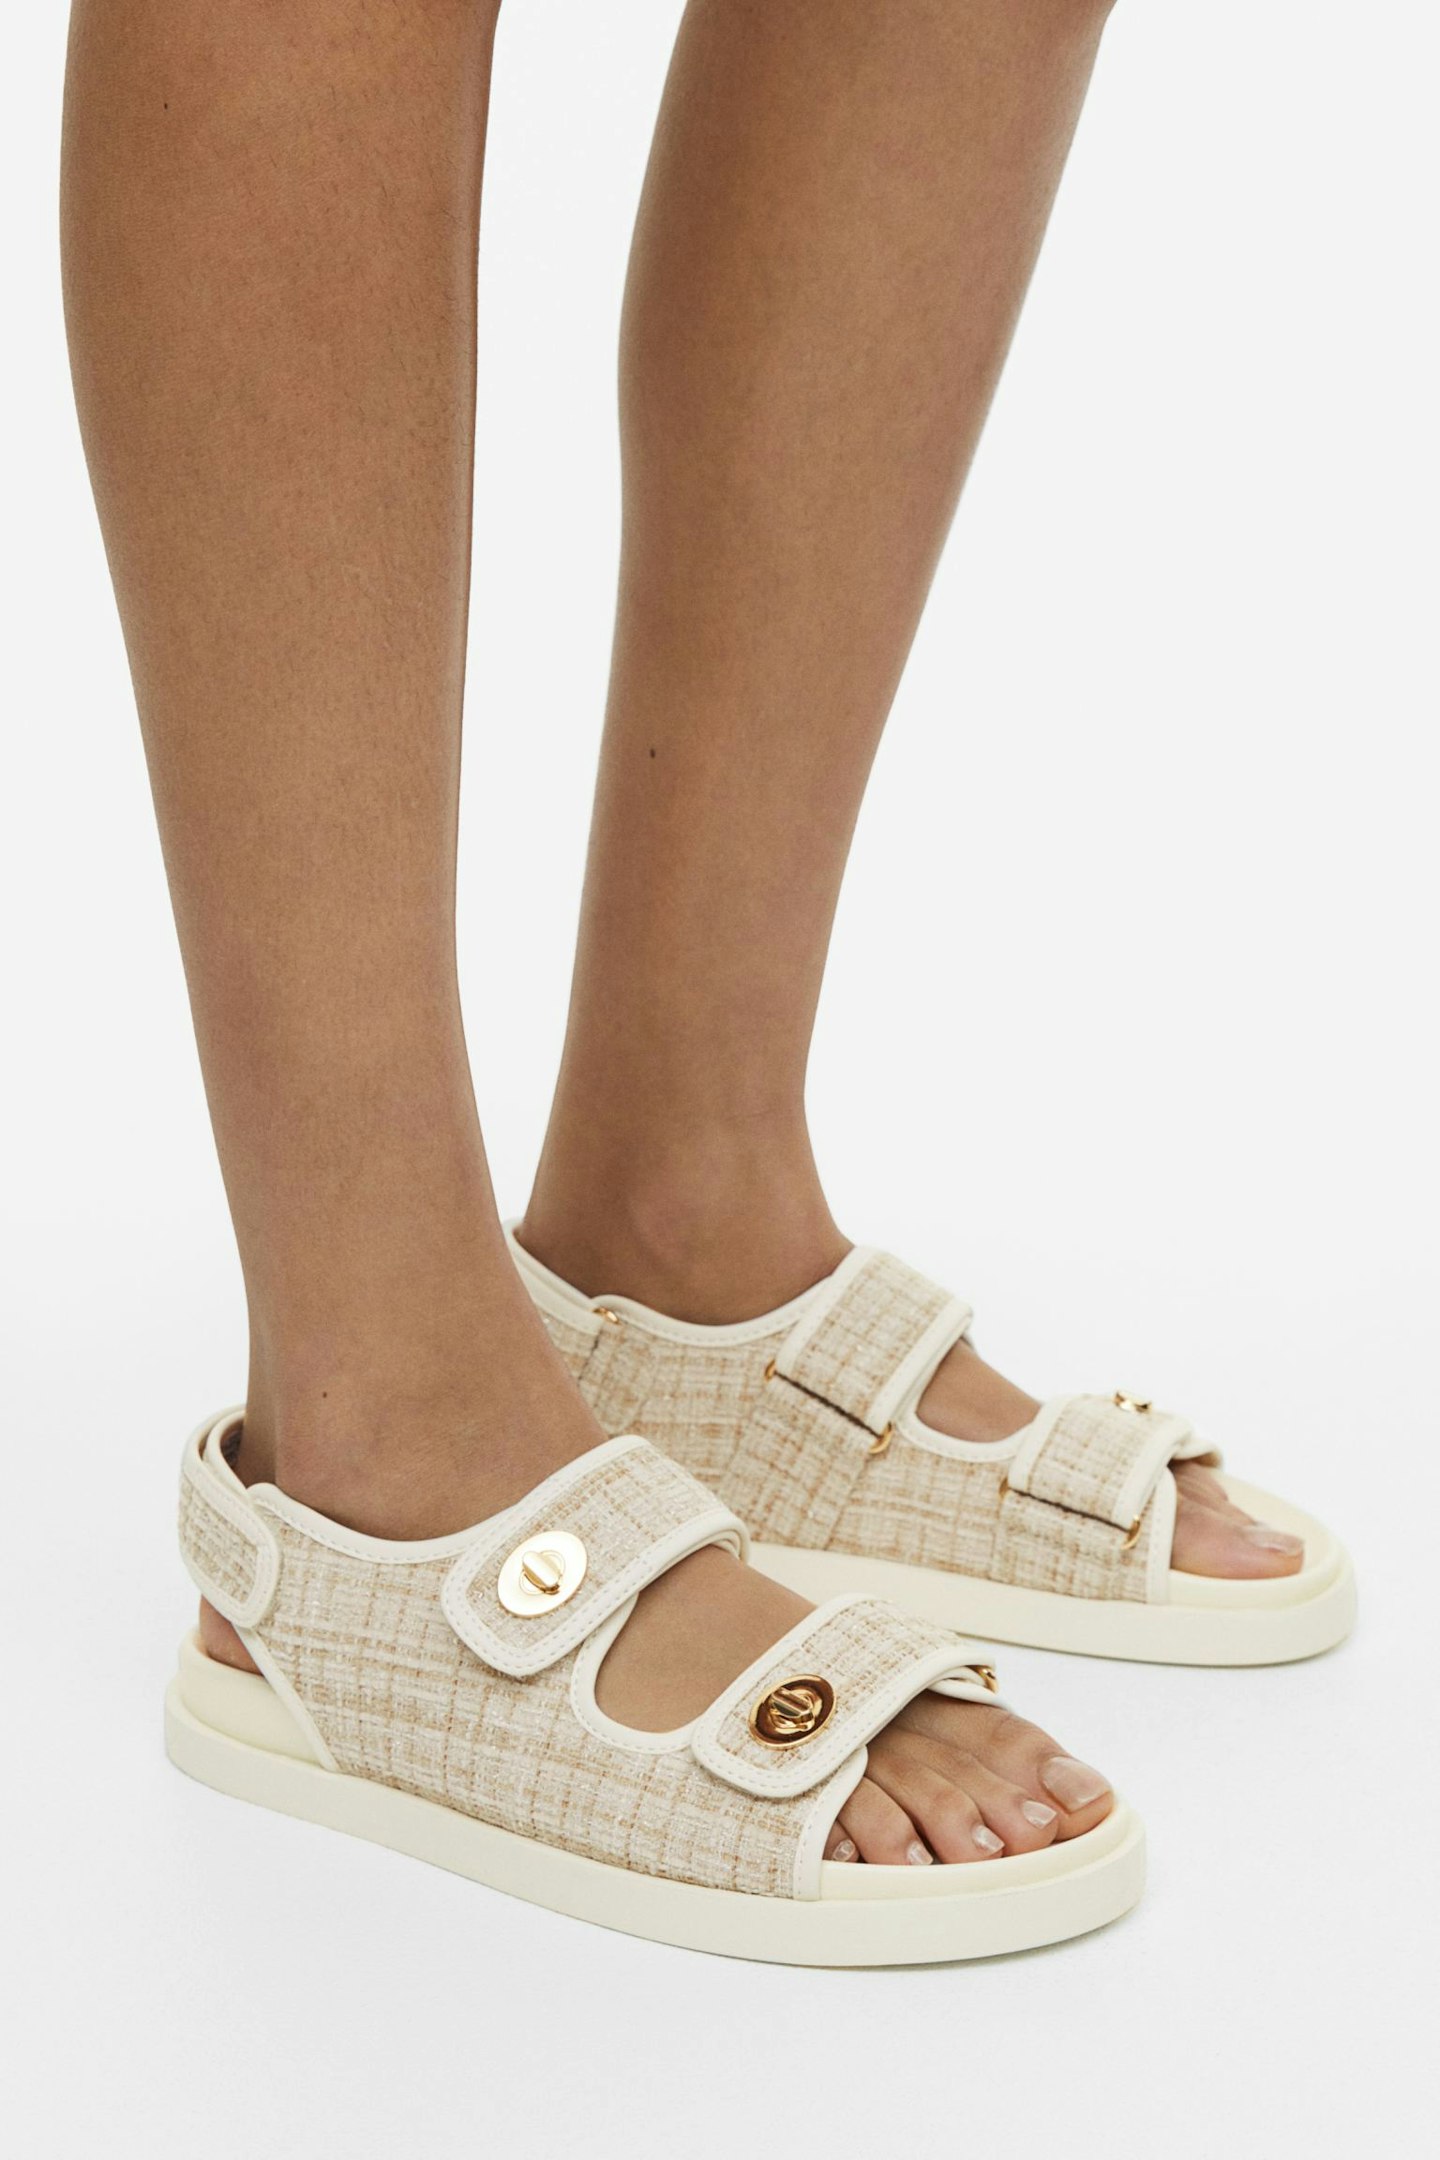 lån Bløde fødder kobling H&M's Chanel Sandal Dupe Is £29.99 | Fashion | Grazia